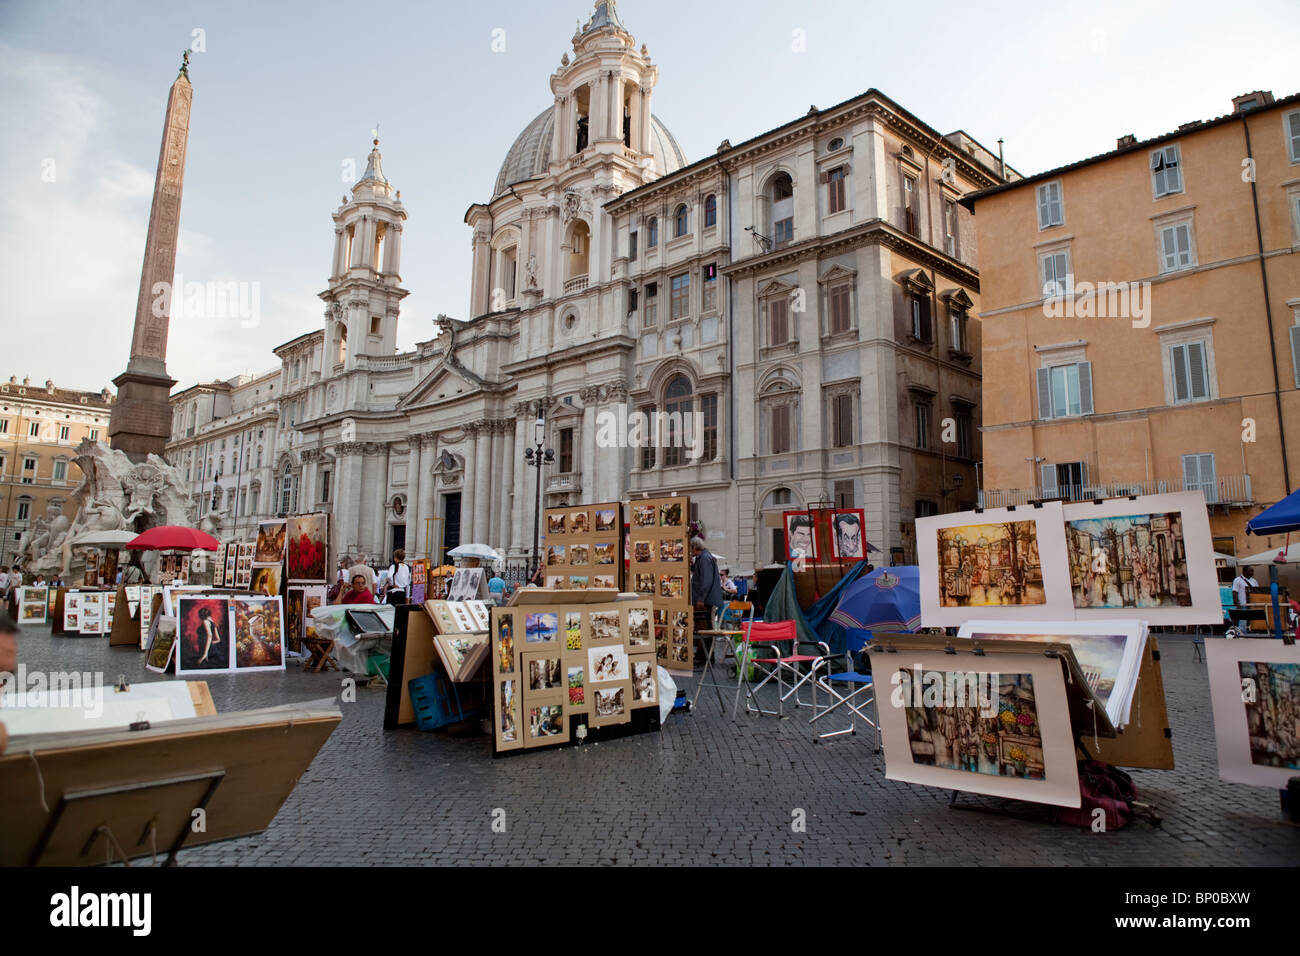 La vente de leurs œuvres d'artistes dans la rue. L'Italie, Rome, Piazza Navona. Banque D'Images